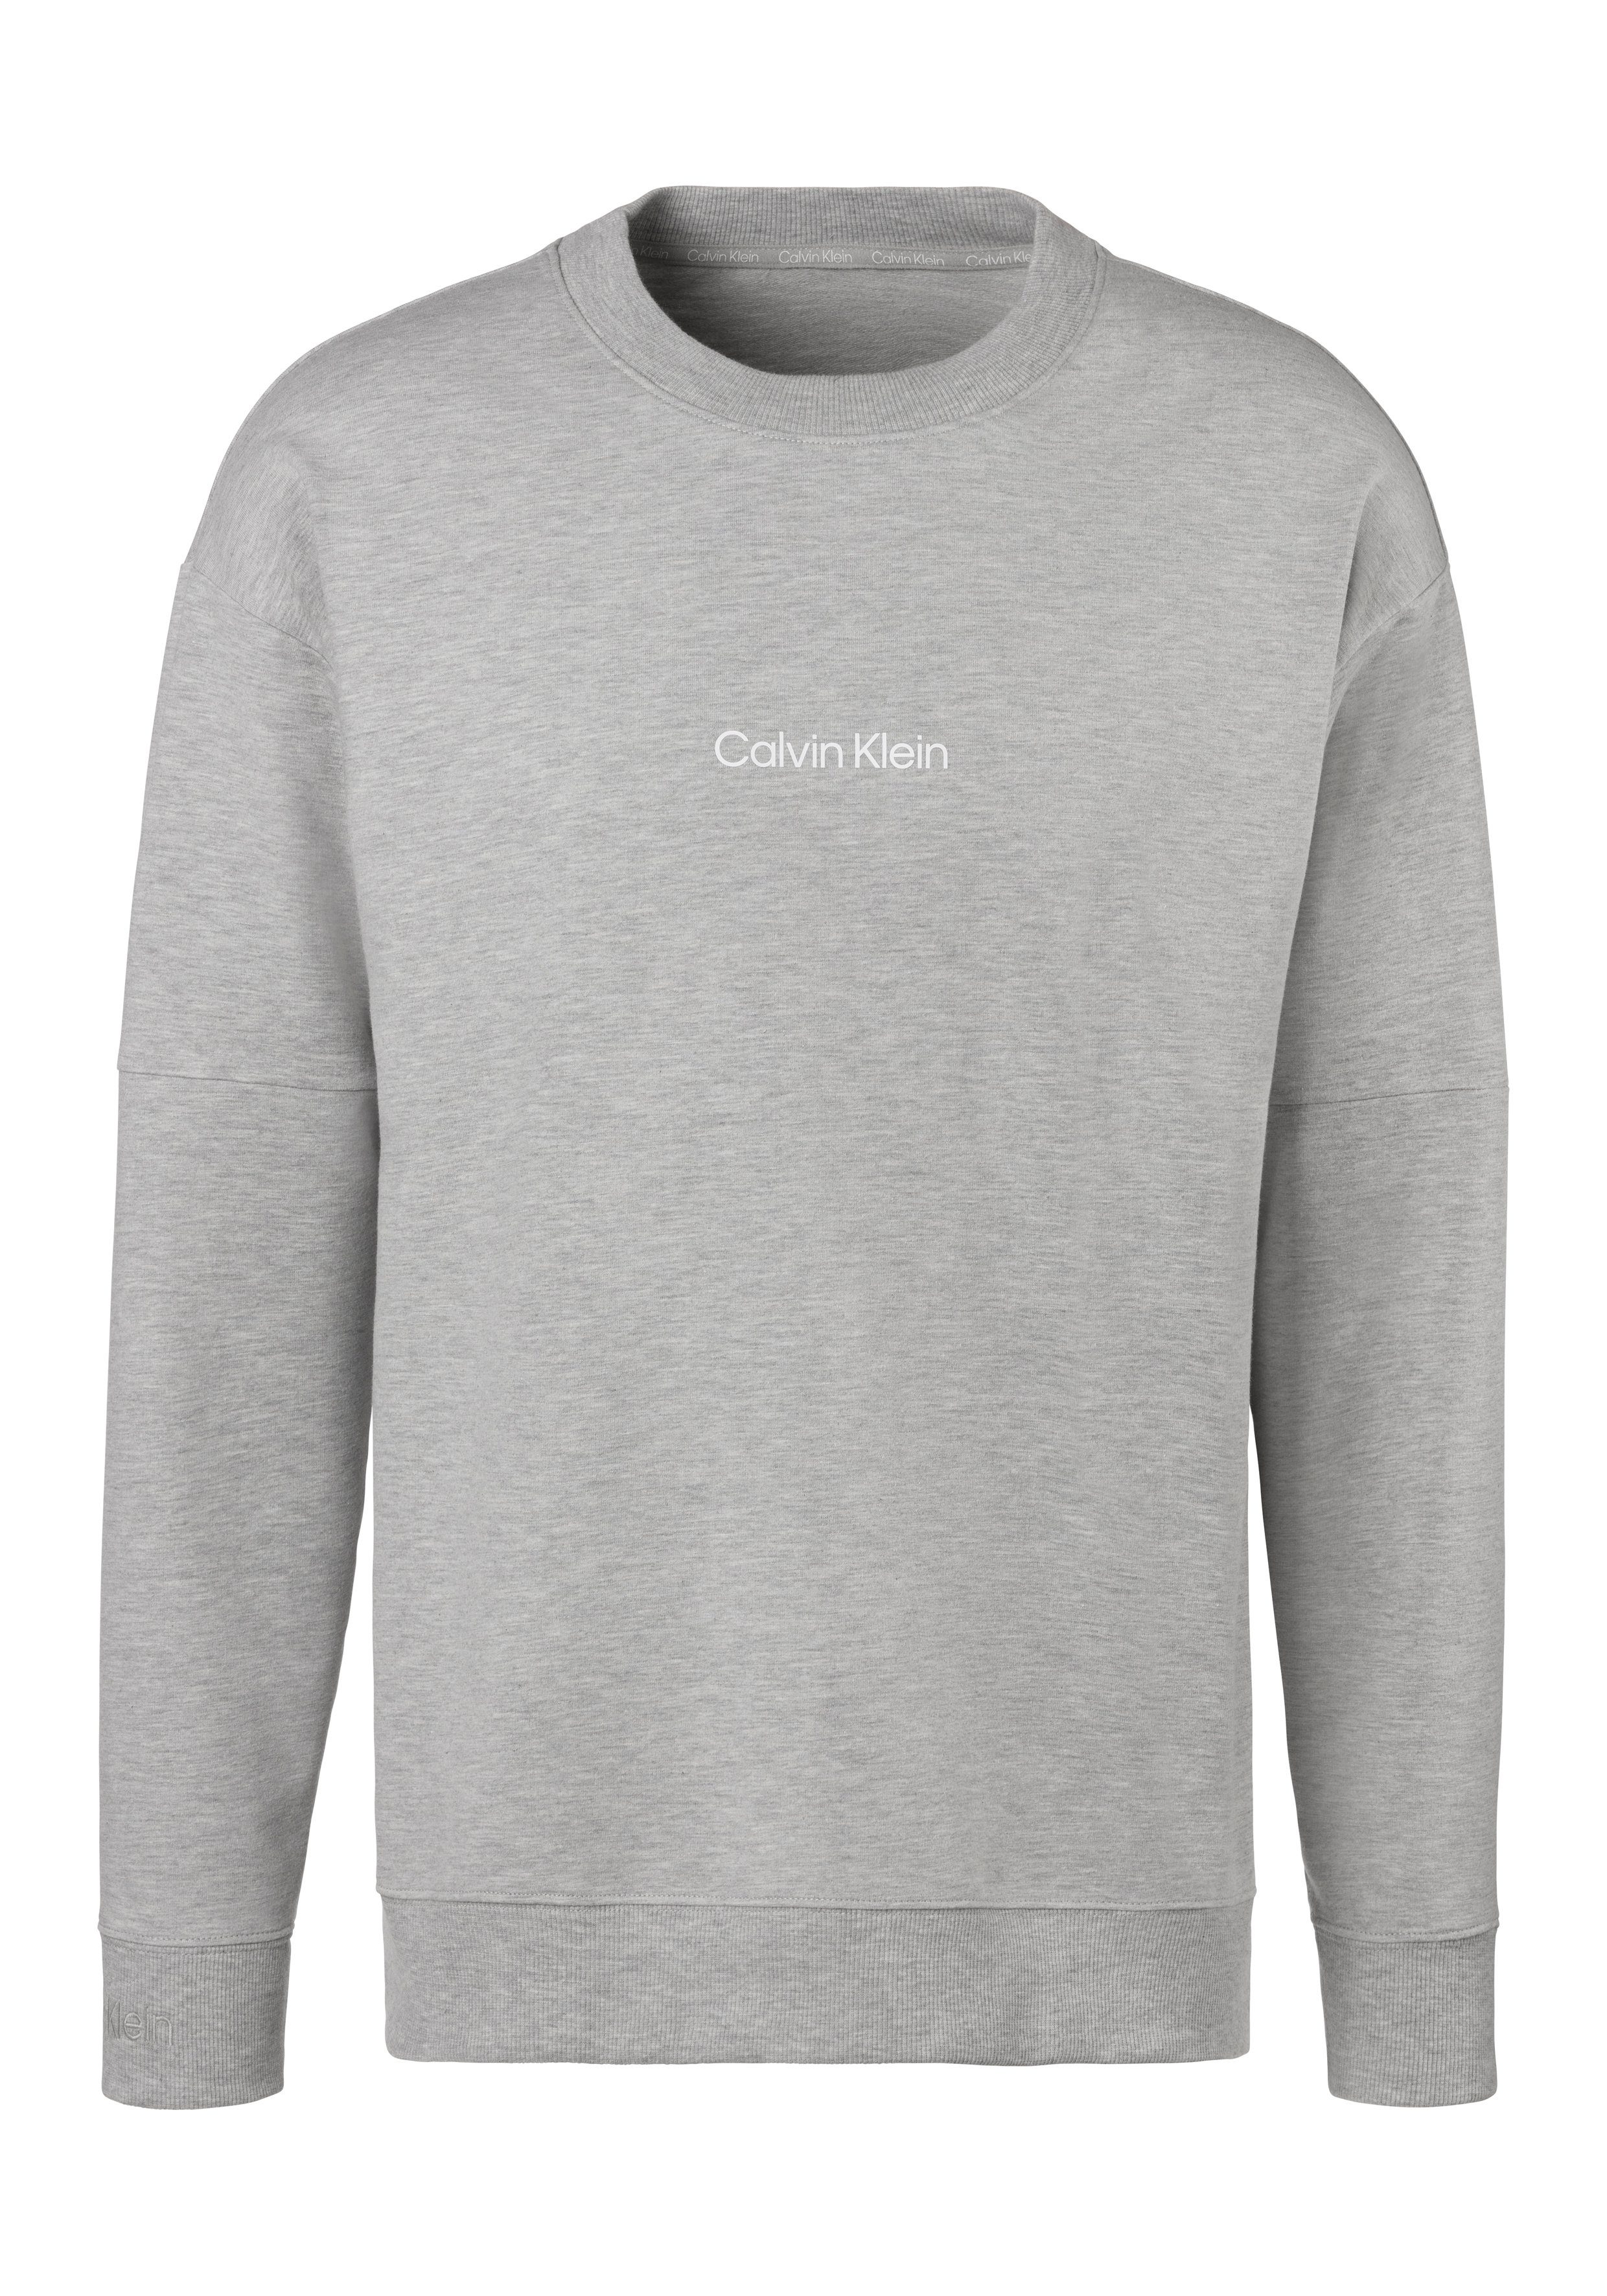 grau-meliert vorn Klein Calvin Underwear Sweatshirt Logodruck mit